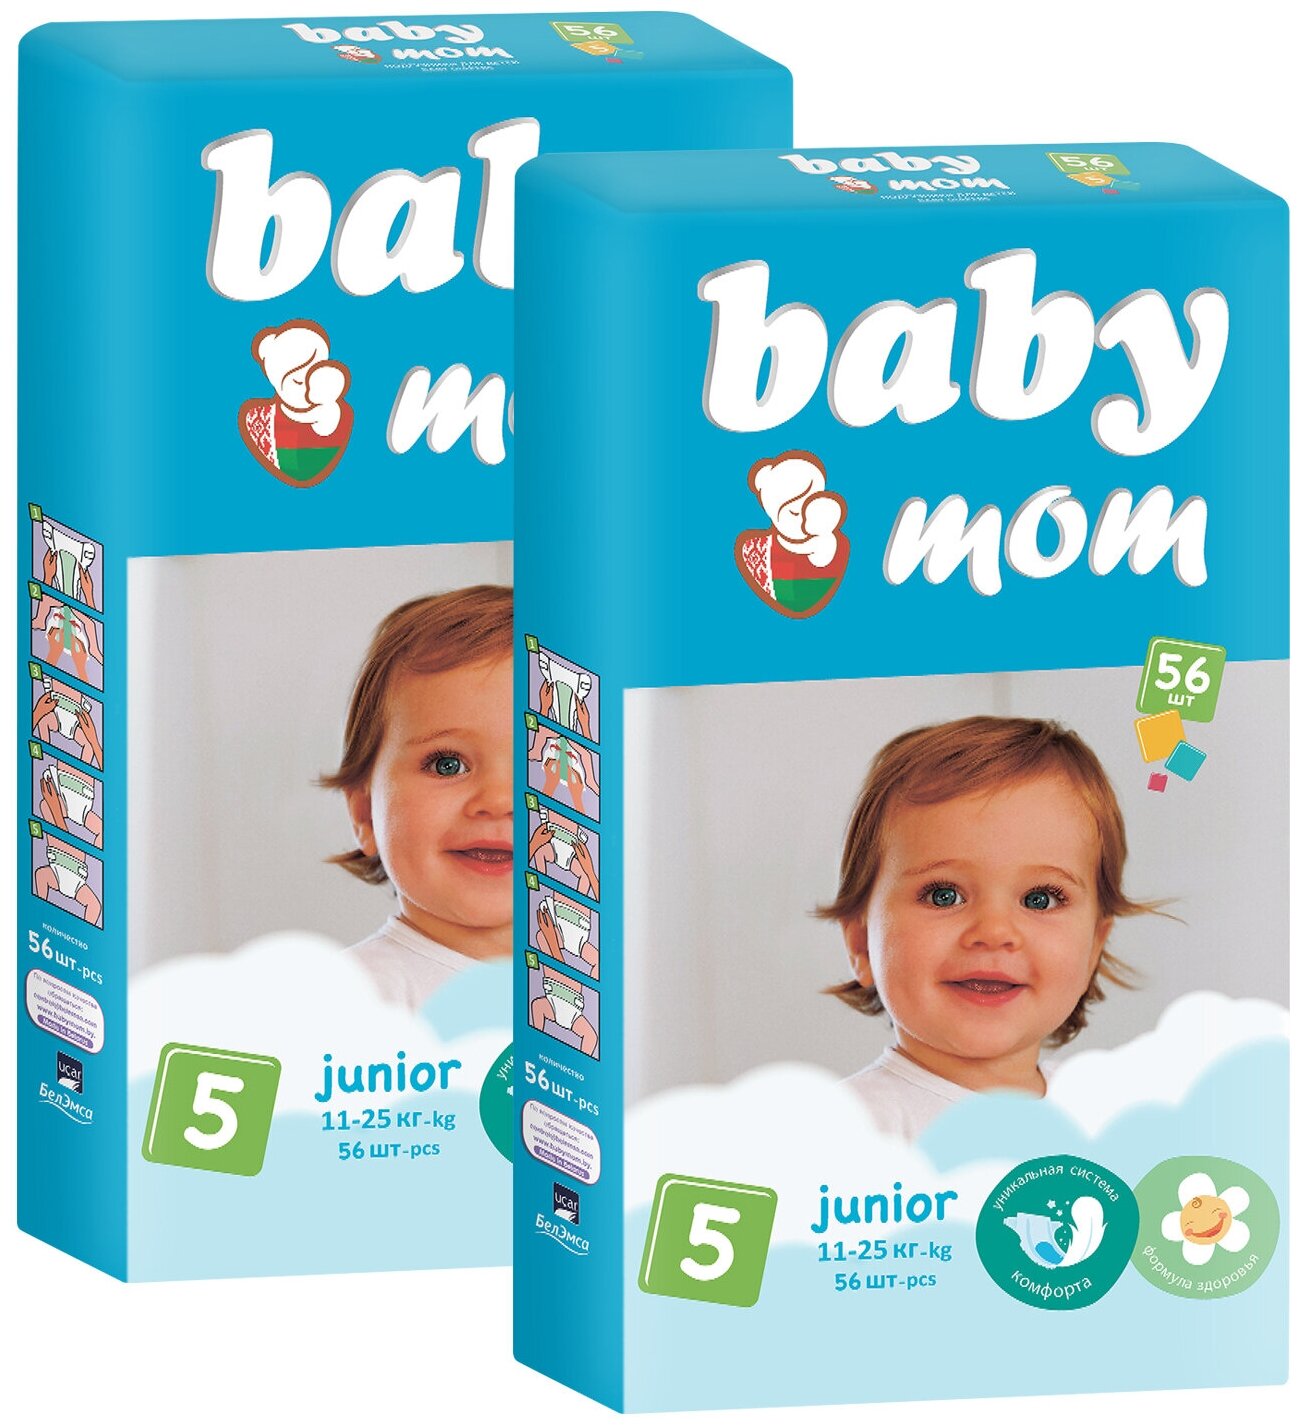 Baby Mom Подгузники с кремом бальзамом для детей 5 размер 112 шт